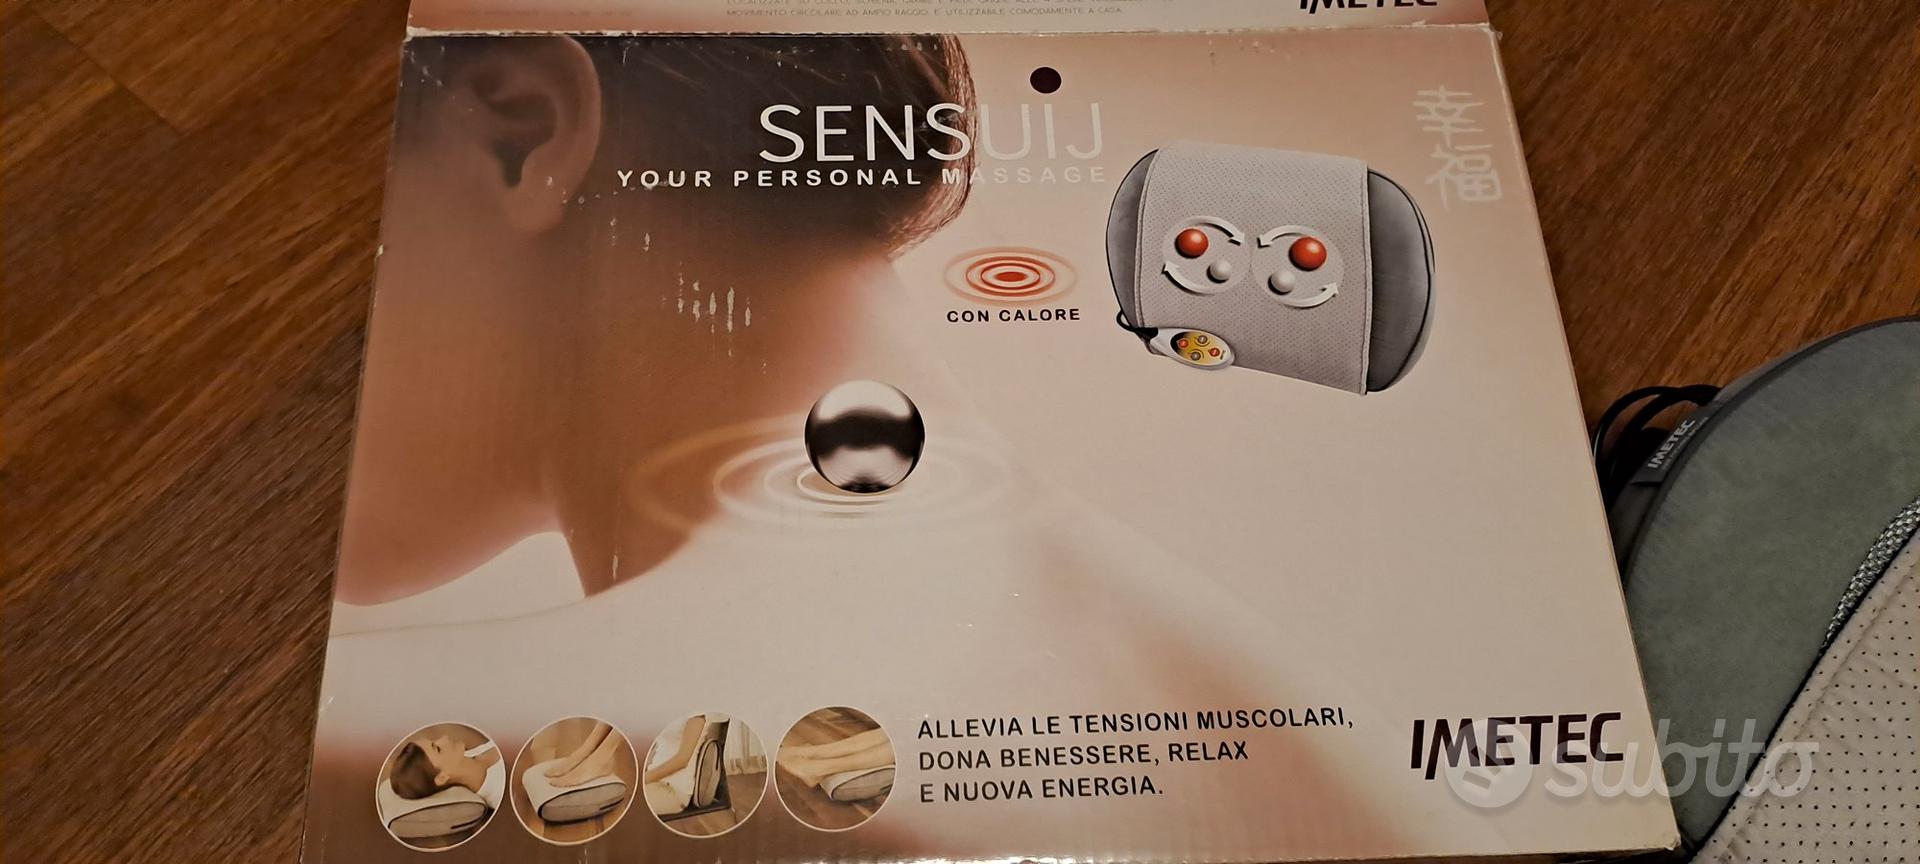 Cuscino massaggiante con funzione calore Sensuij - Elettrodomestici In  vendita a Milano